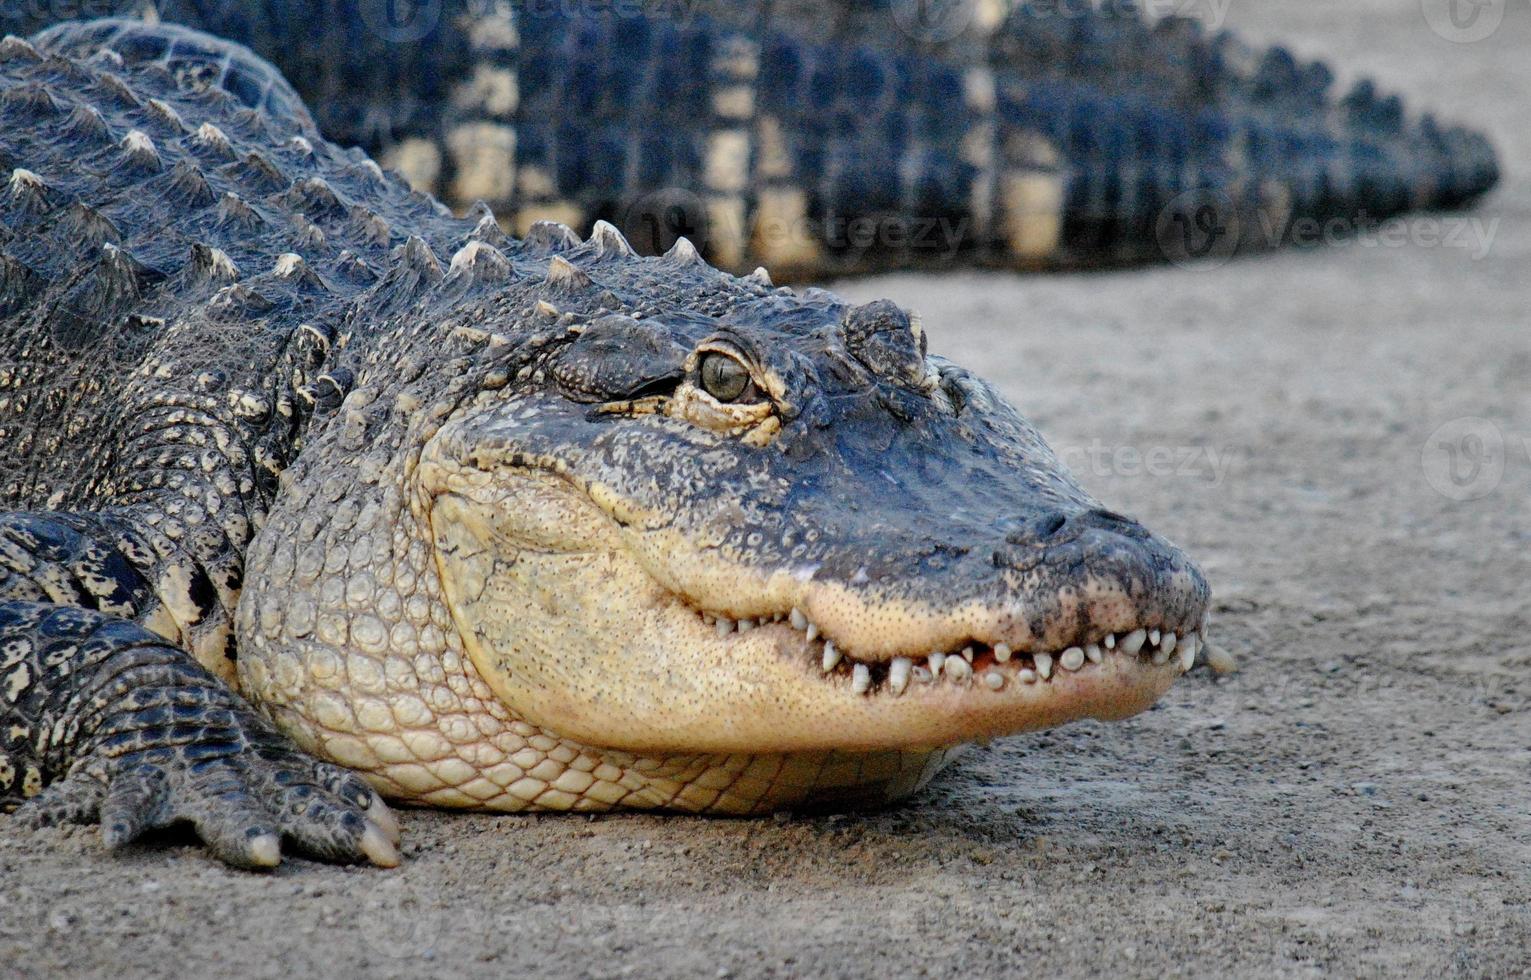 œil sur le prix - alligator femelle photo